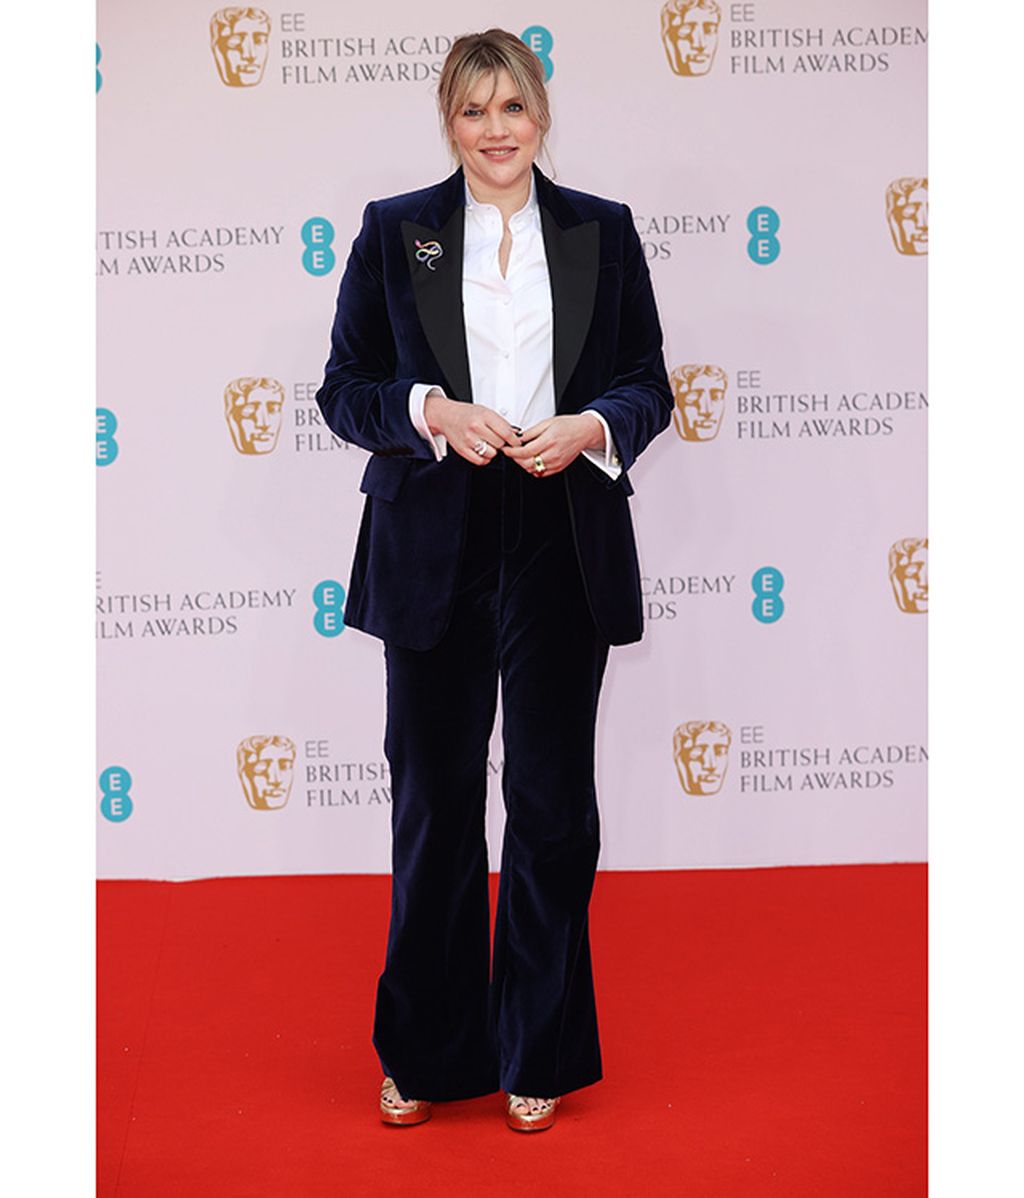 De Lady Gaga a Naomi Campbell: la alfombra roja de los BAFTA 2022, foto a foto